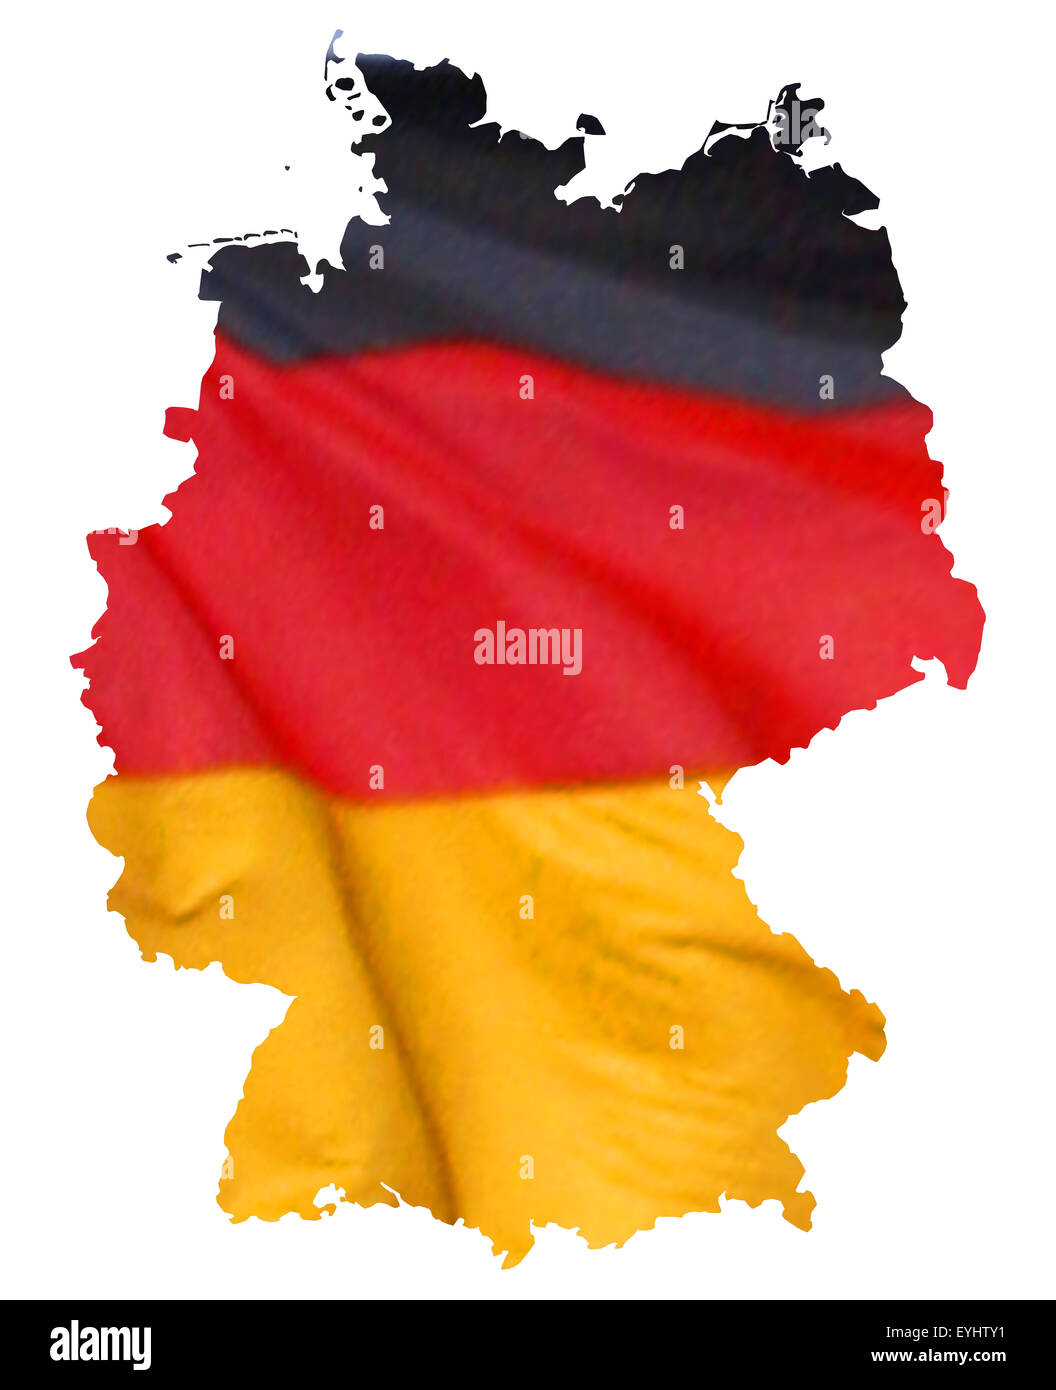 Symbolbild: Bundesrepublik Deutschland: Laenderumriss mit Flagge/ imagen simbólica: República Federal de Alemania: esbozo y la bandera Foto de stock